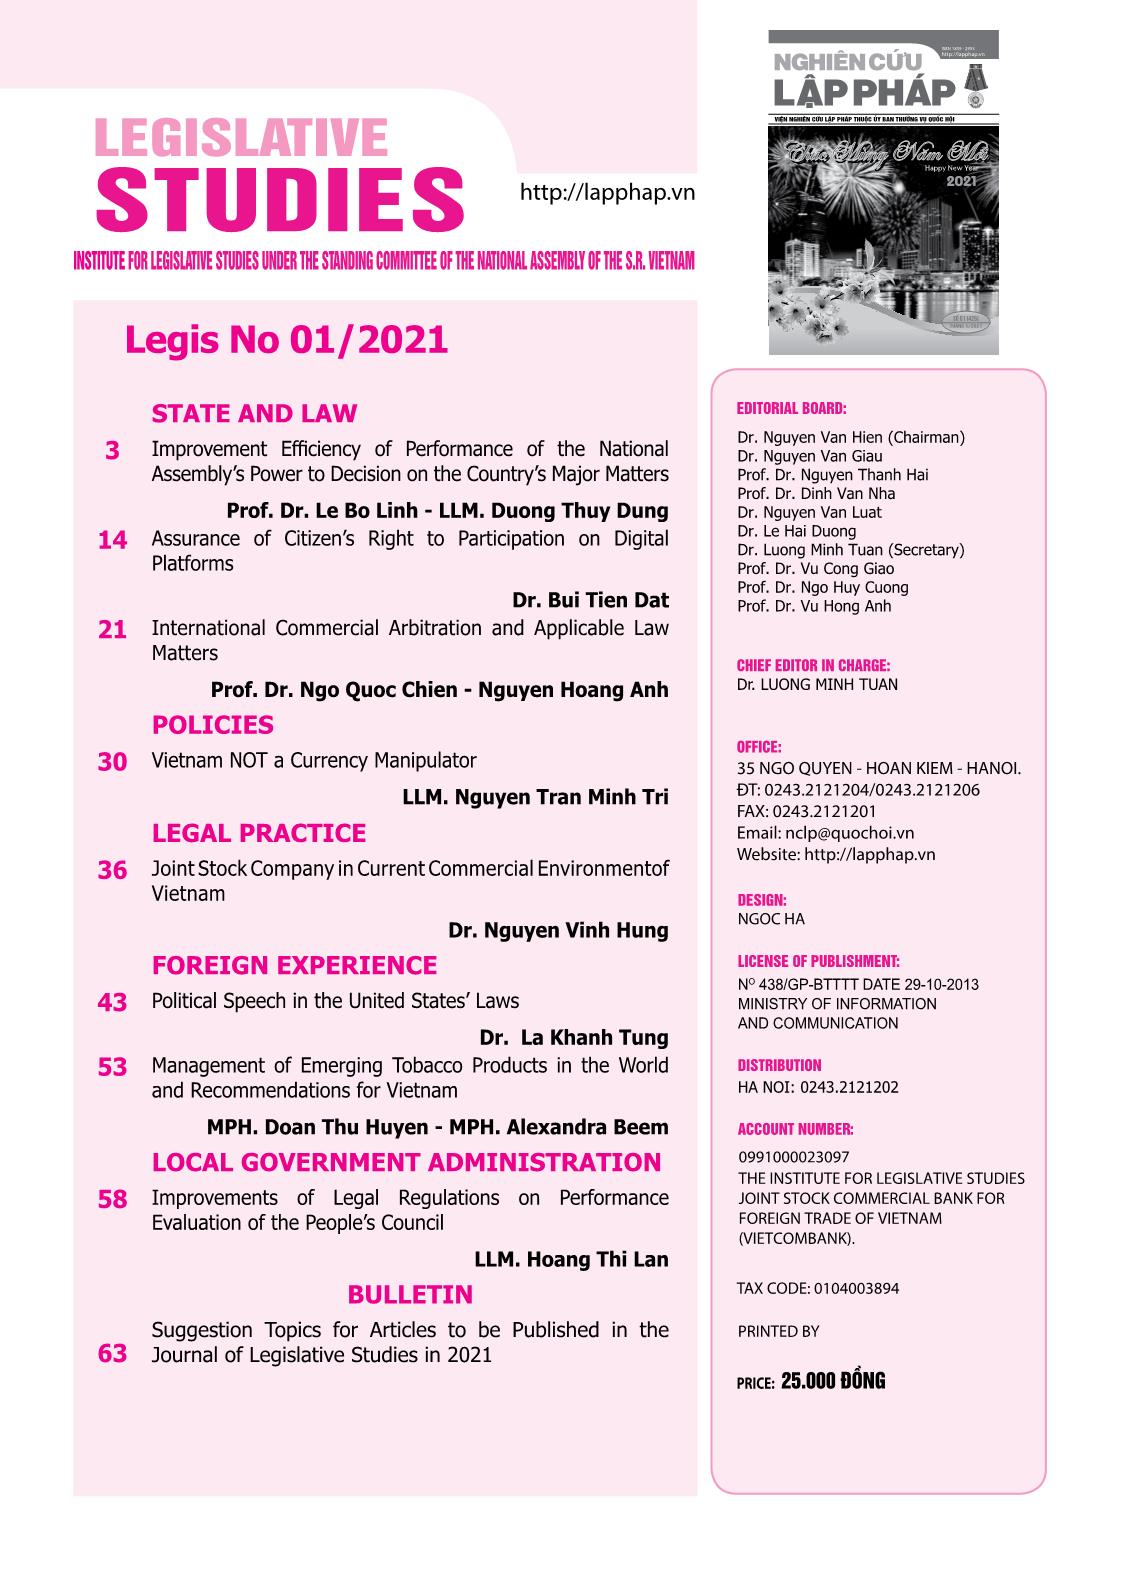 Tạp chí Nghiên cứu lập pháp - Số 01 (425) - Tháng 1/2021 trang 3